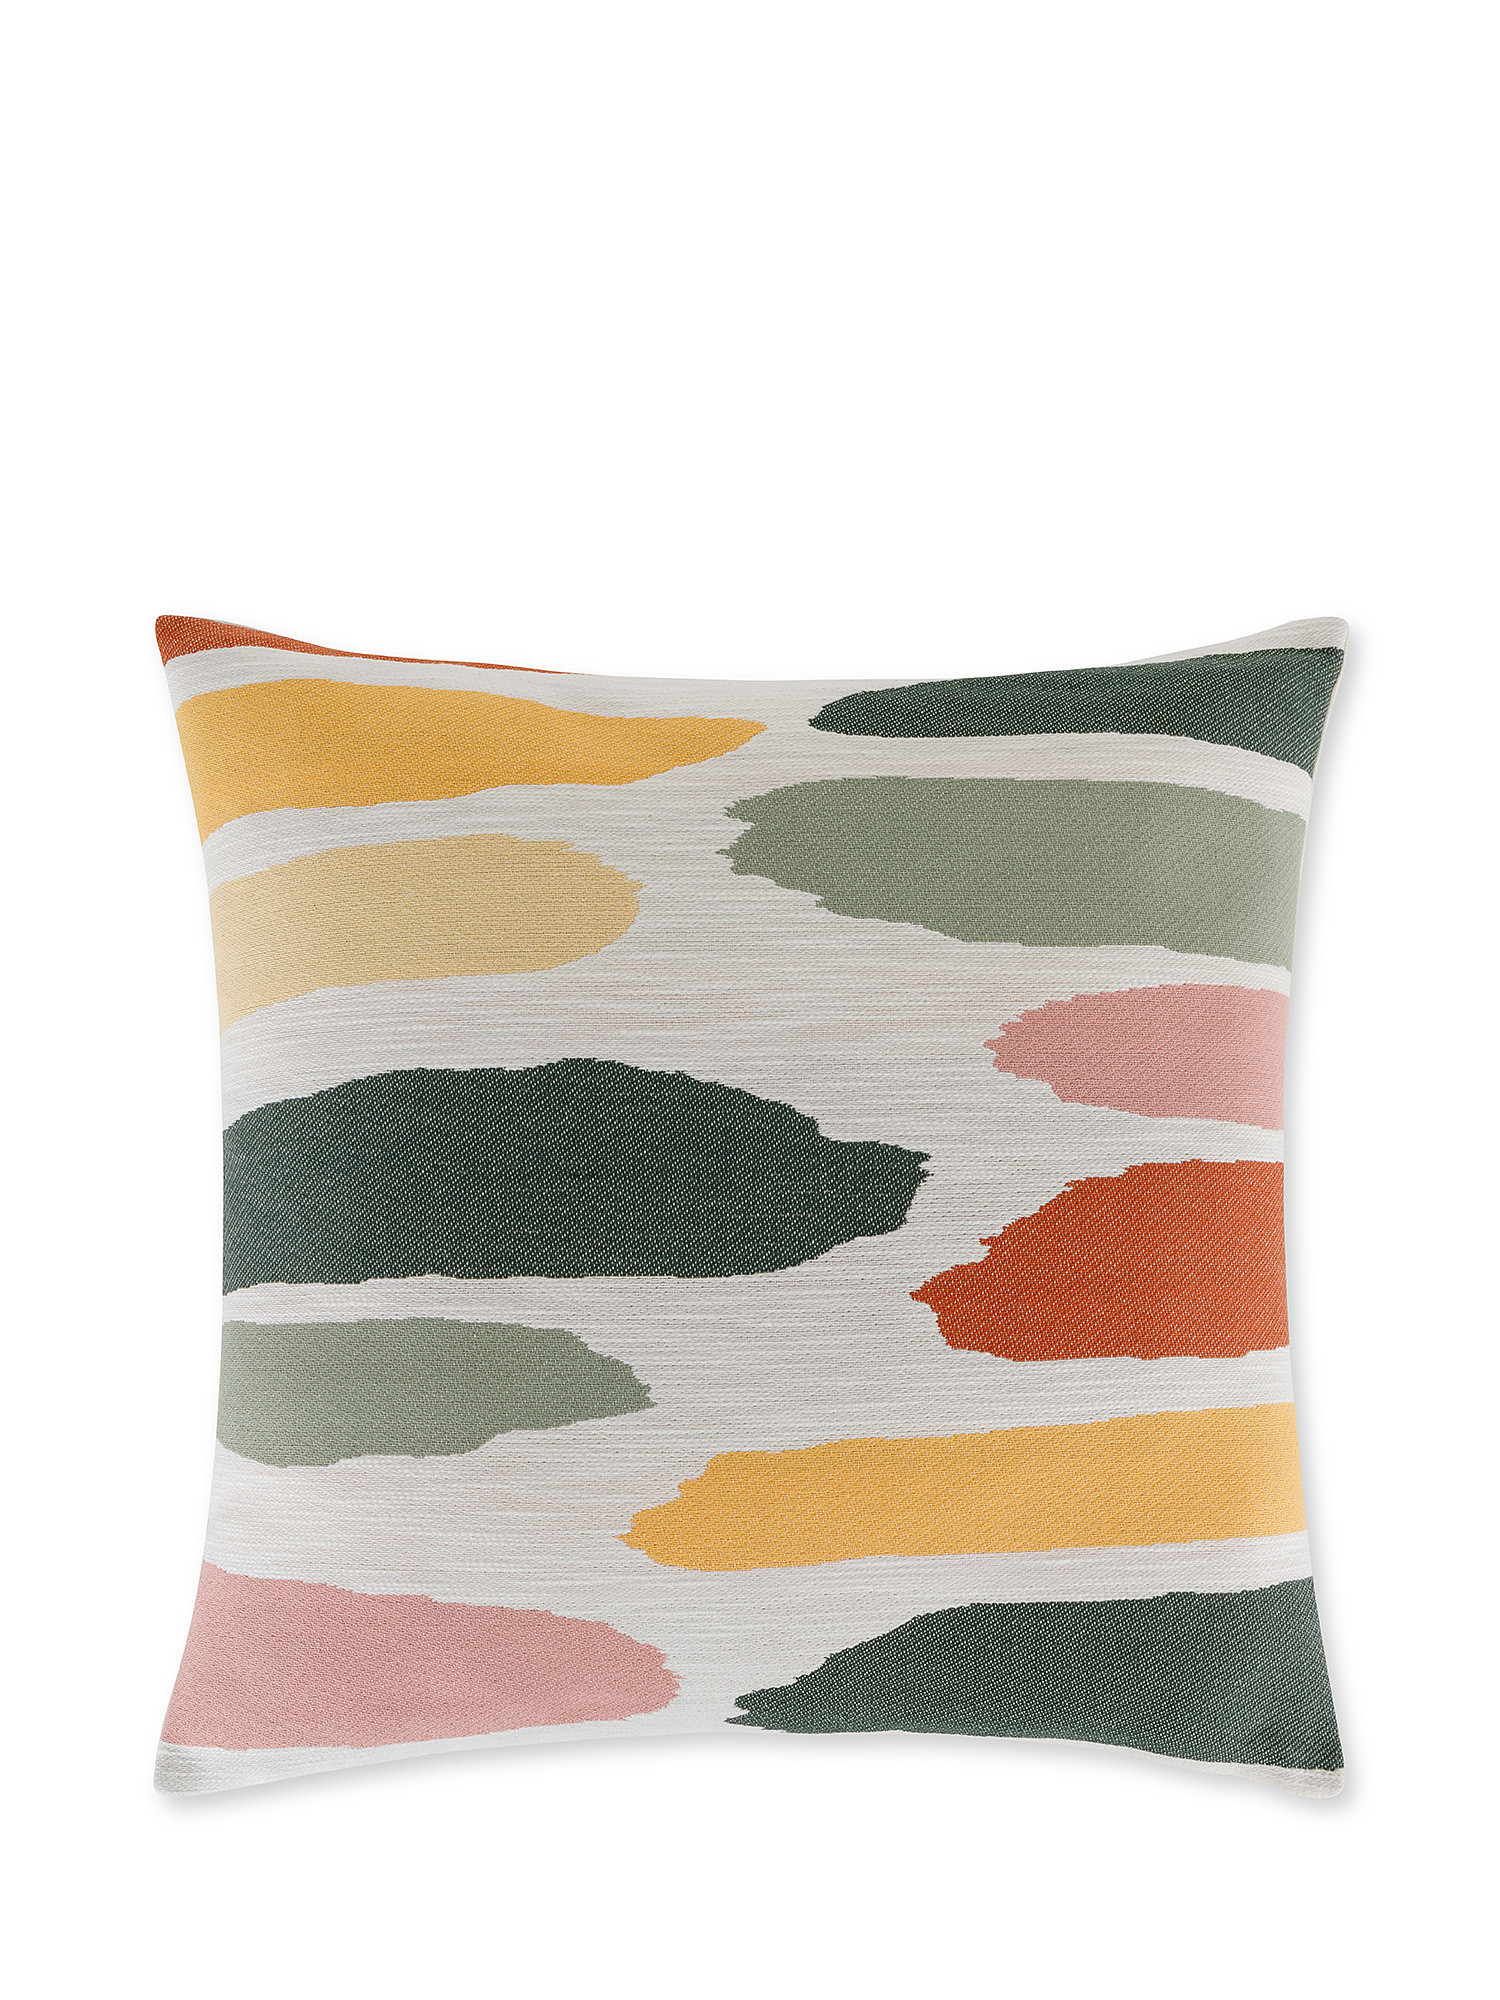 Cloud motif jacquard cushion 50x50cm, Multicolor, large image number 0